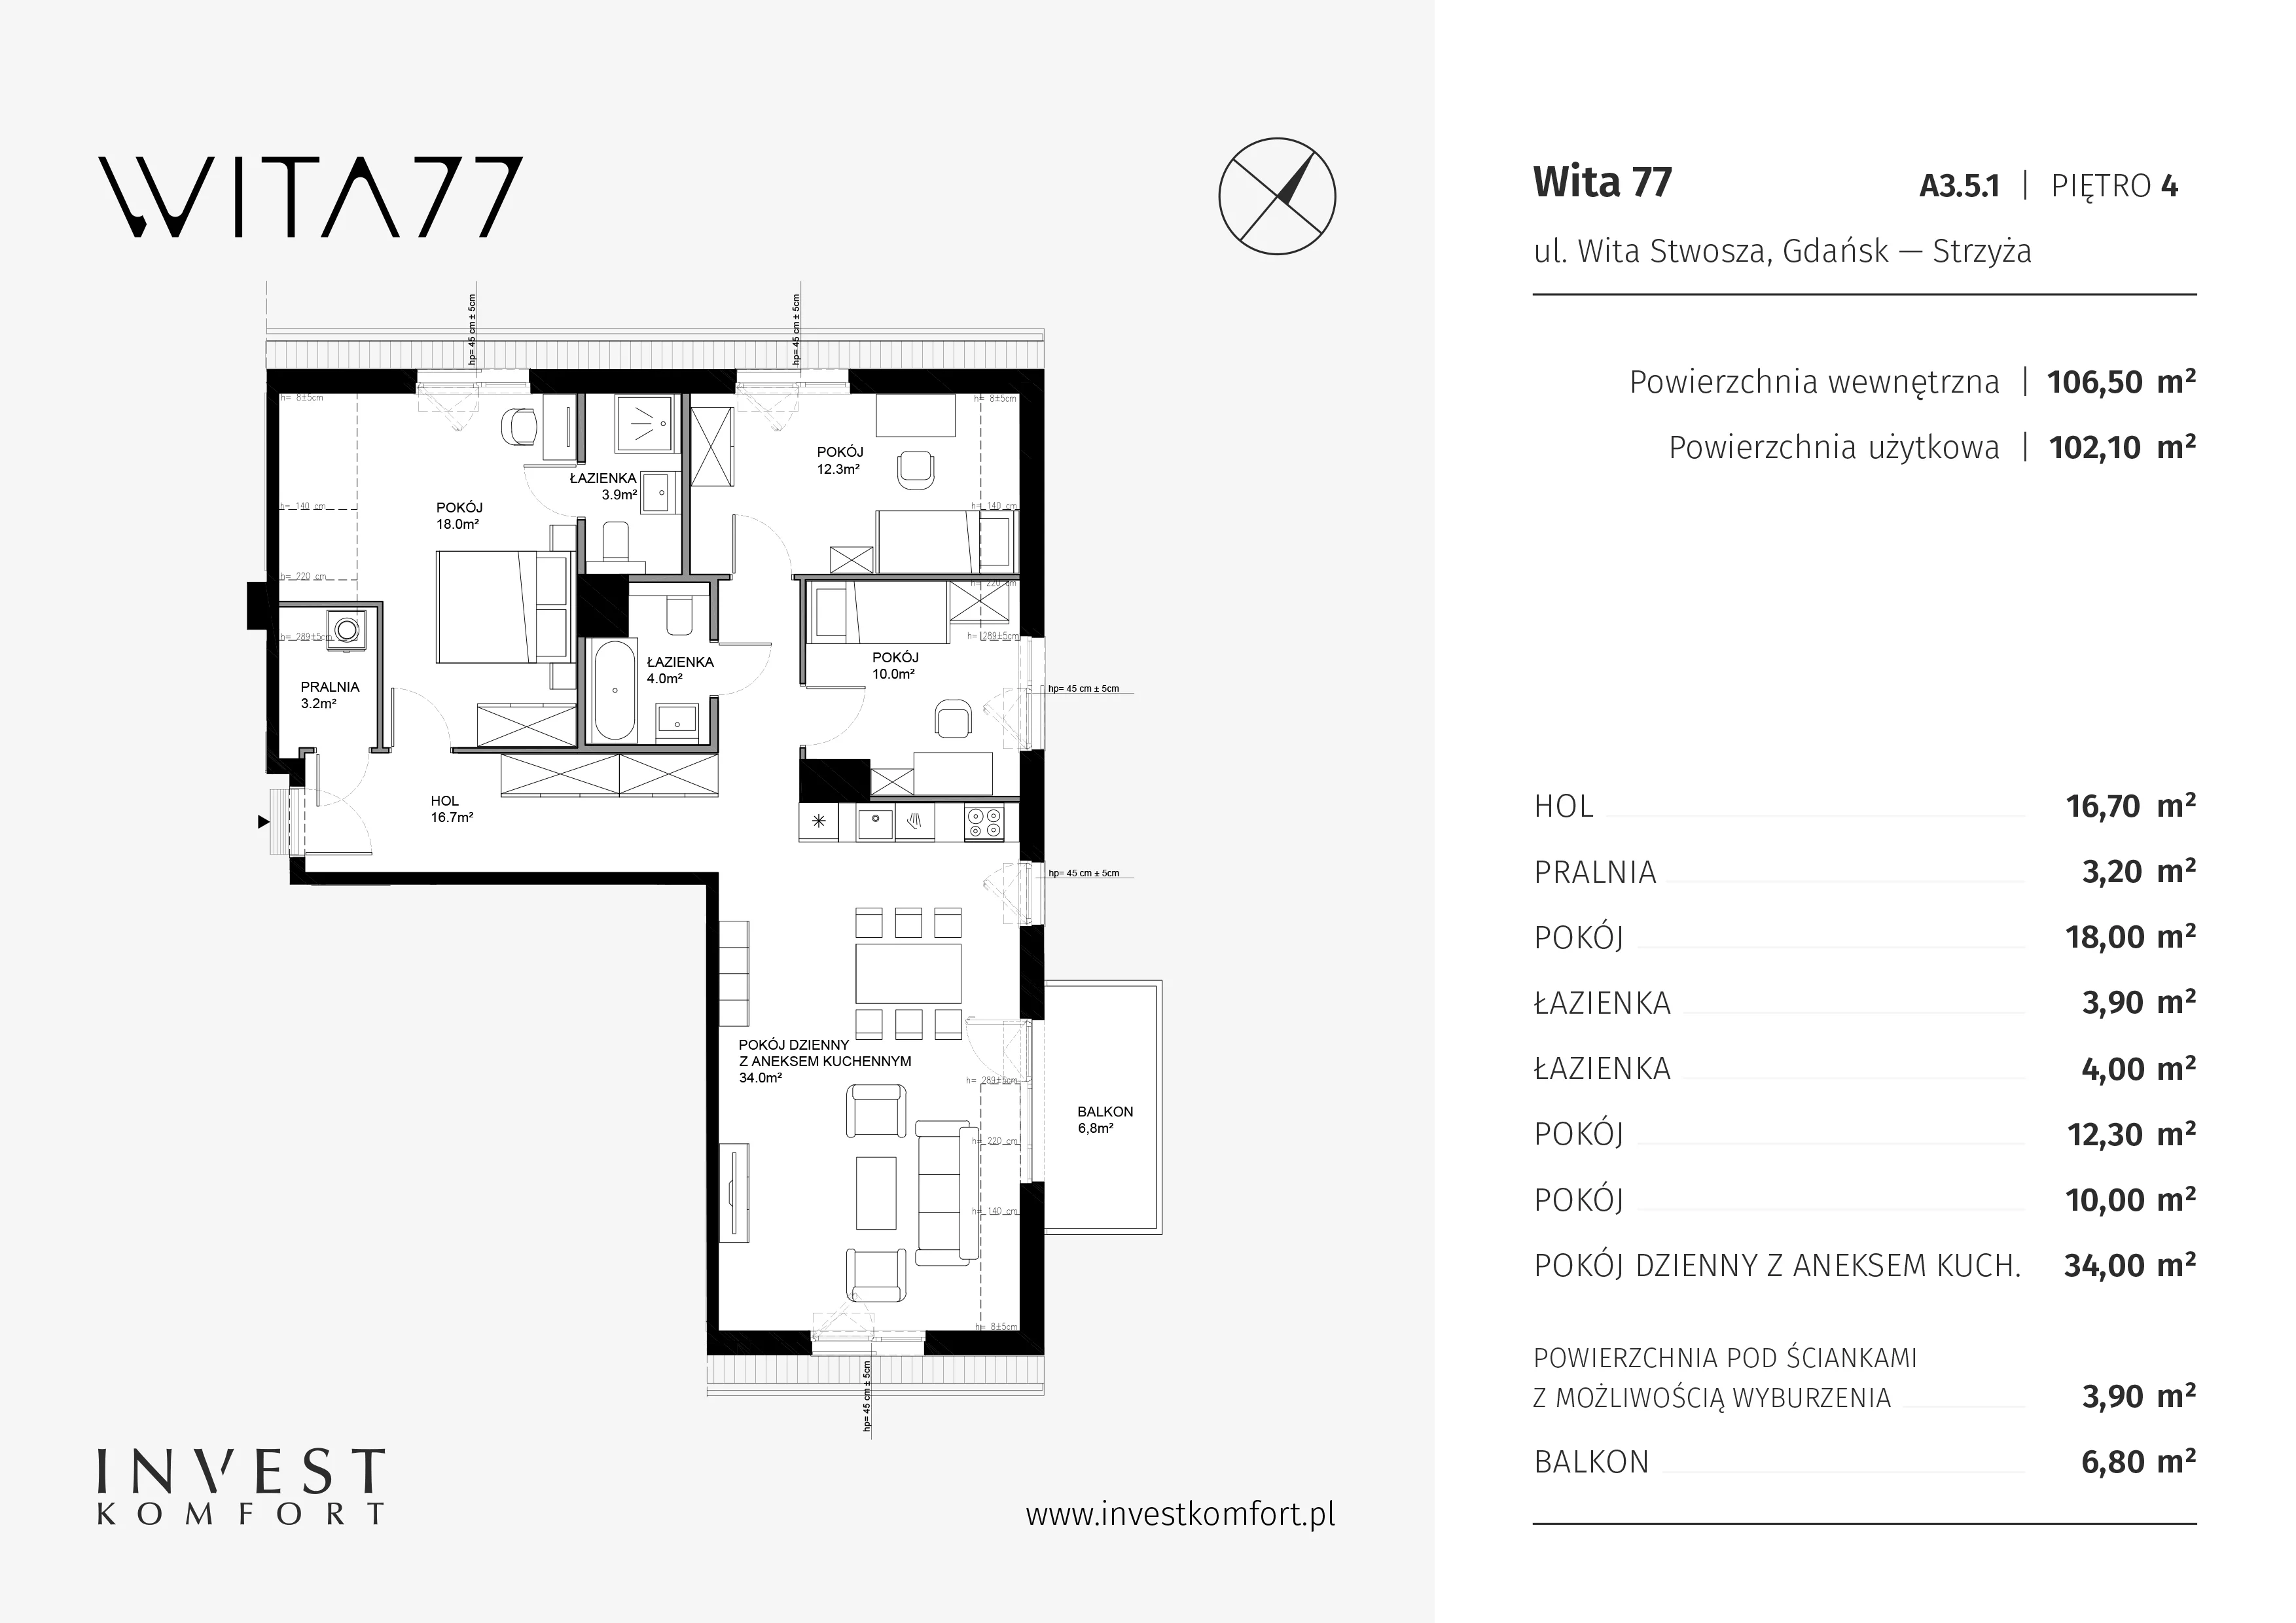 Mieszkanie 106,50 m², piętro 4, oferta nr A3.5.1, Wita 77, Gdańsk, Strzyża, ul. Wita Stwosza 77